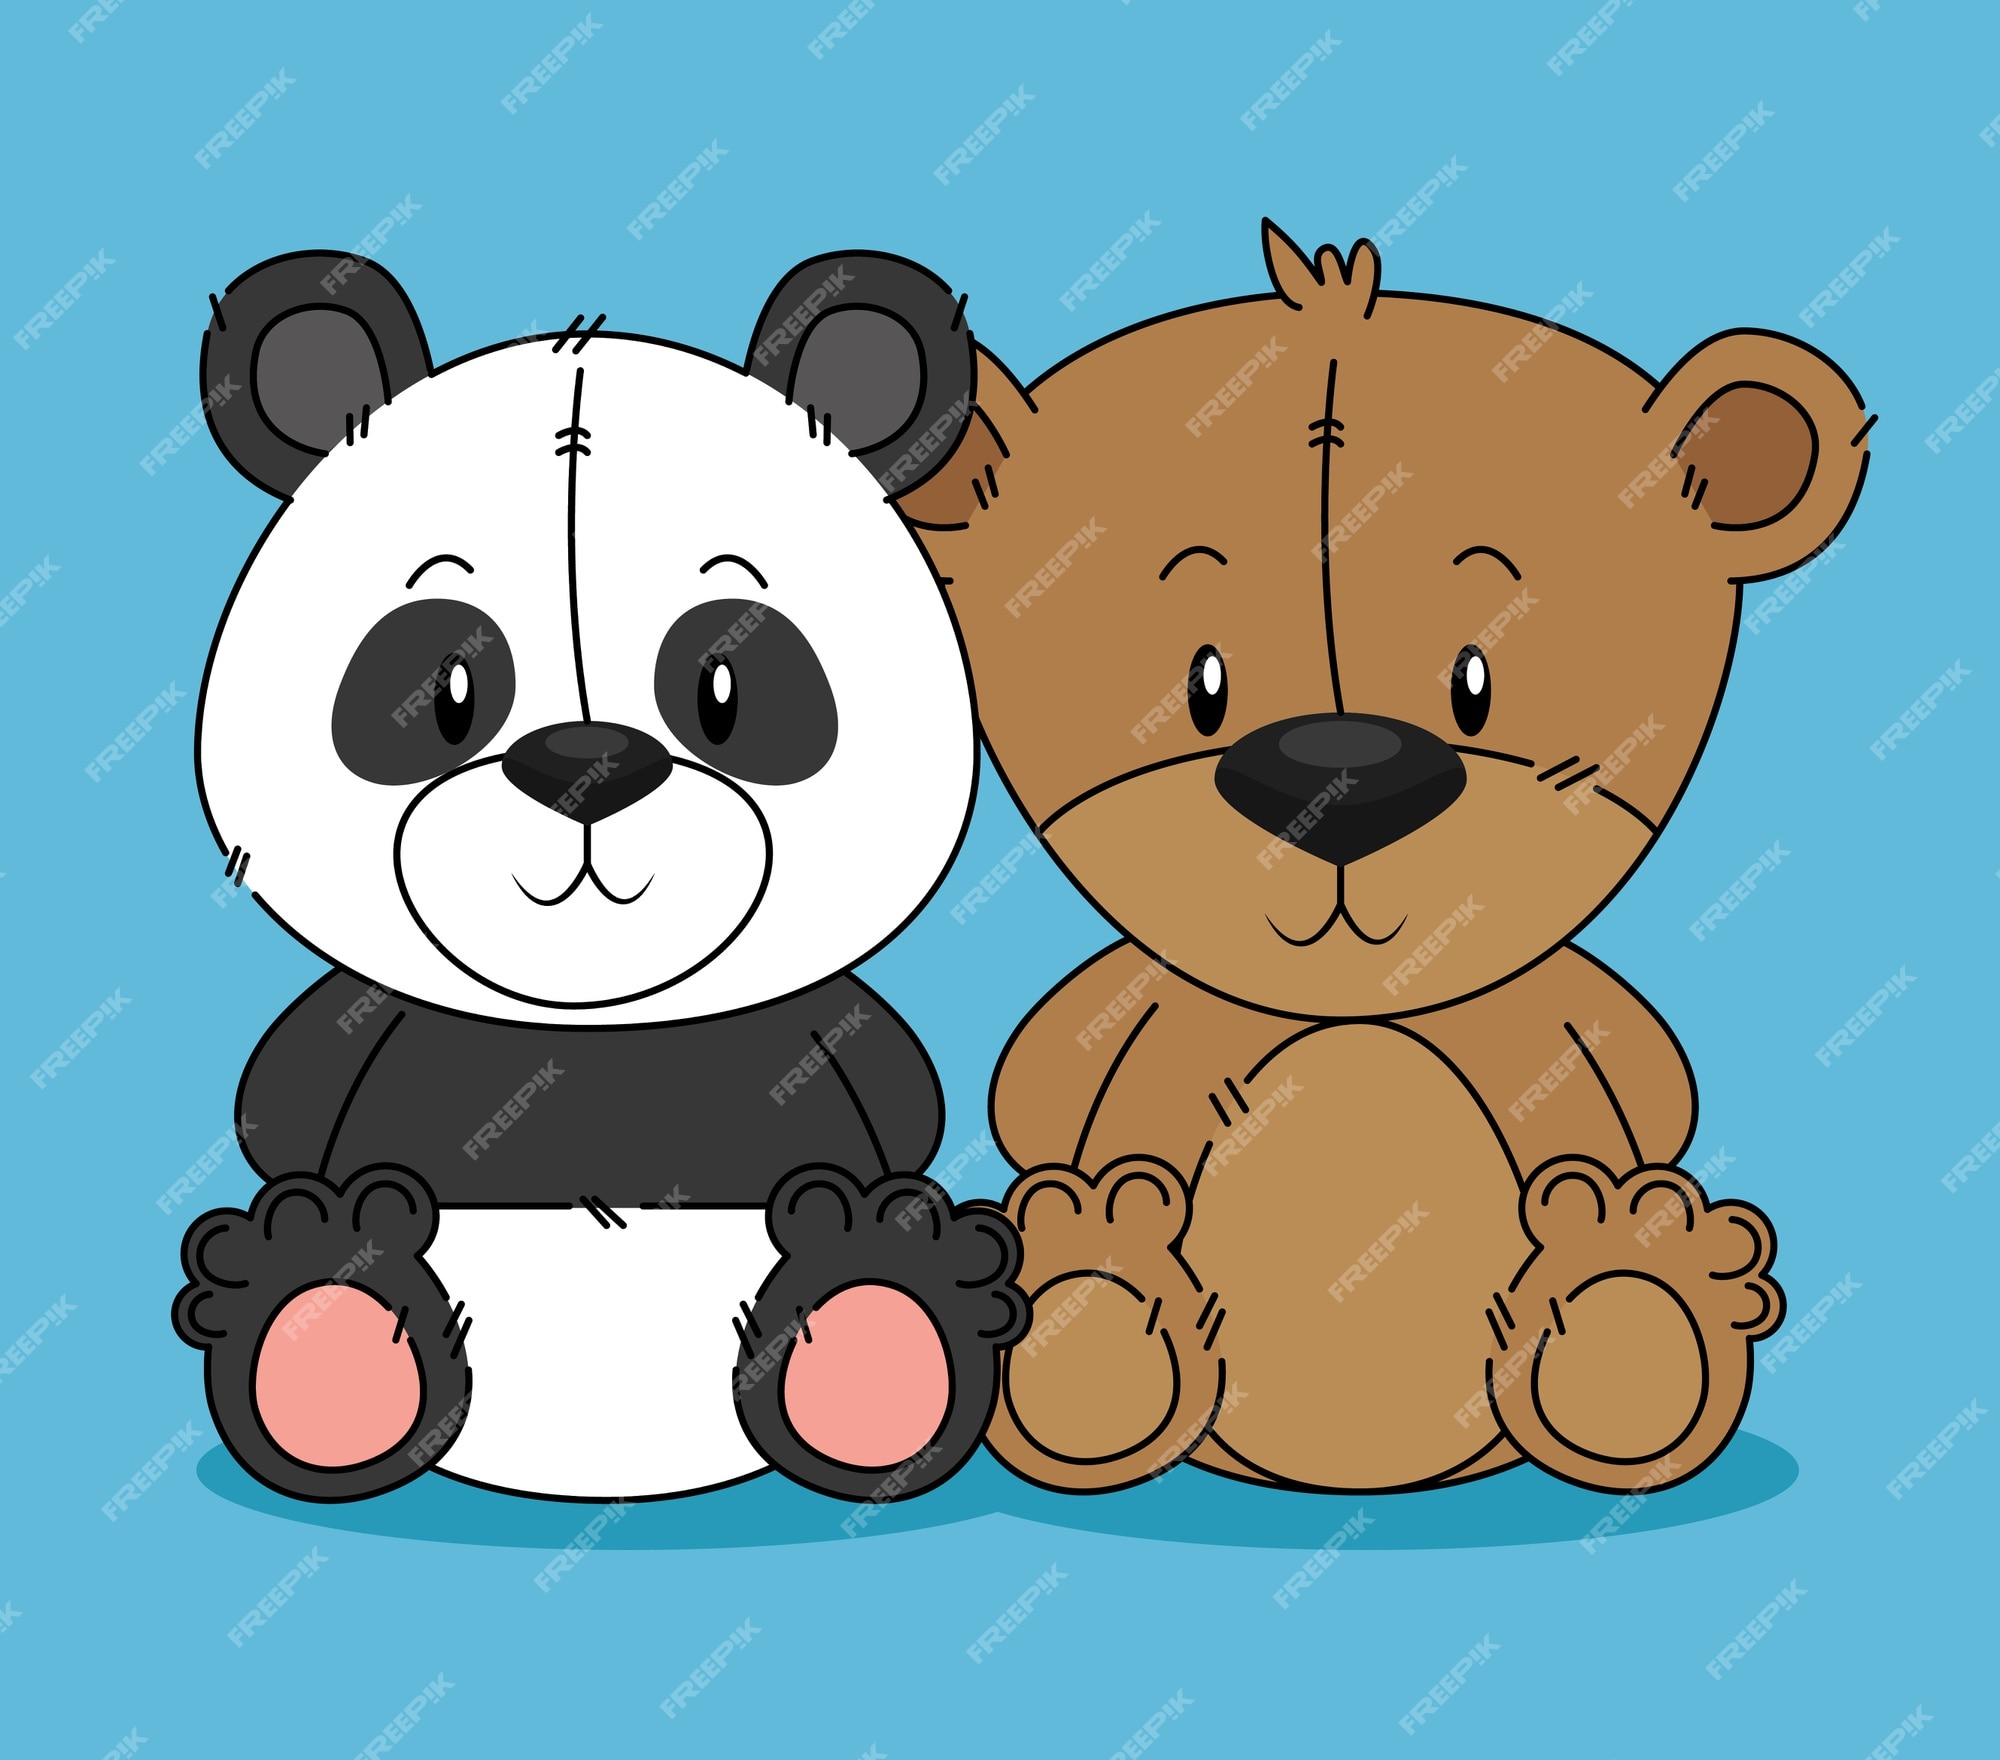 Premium Vector | Cute bear teddy and panda characters